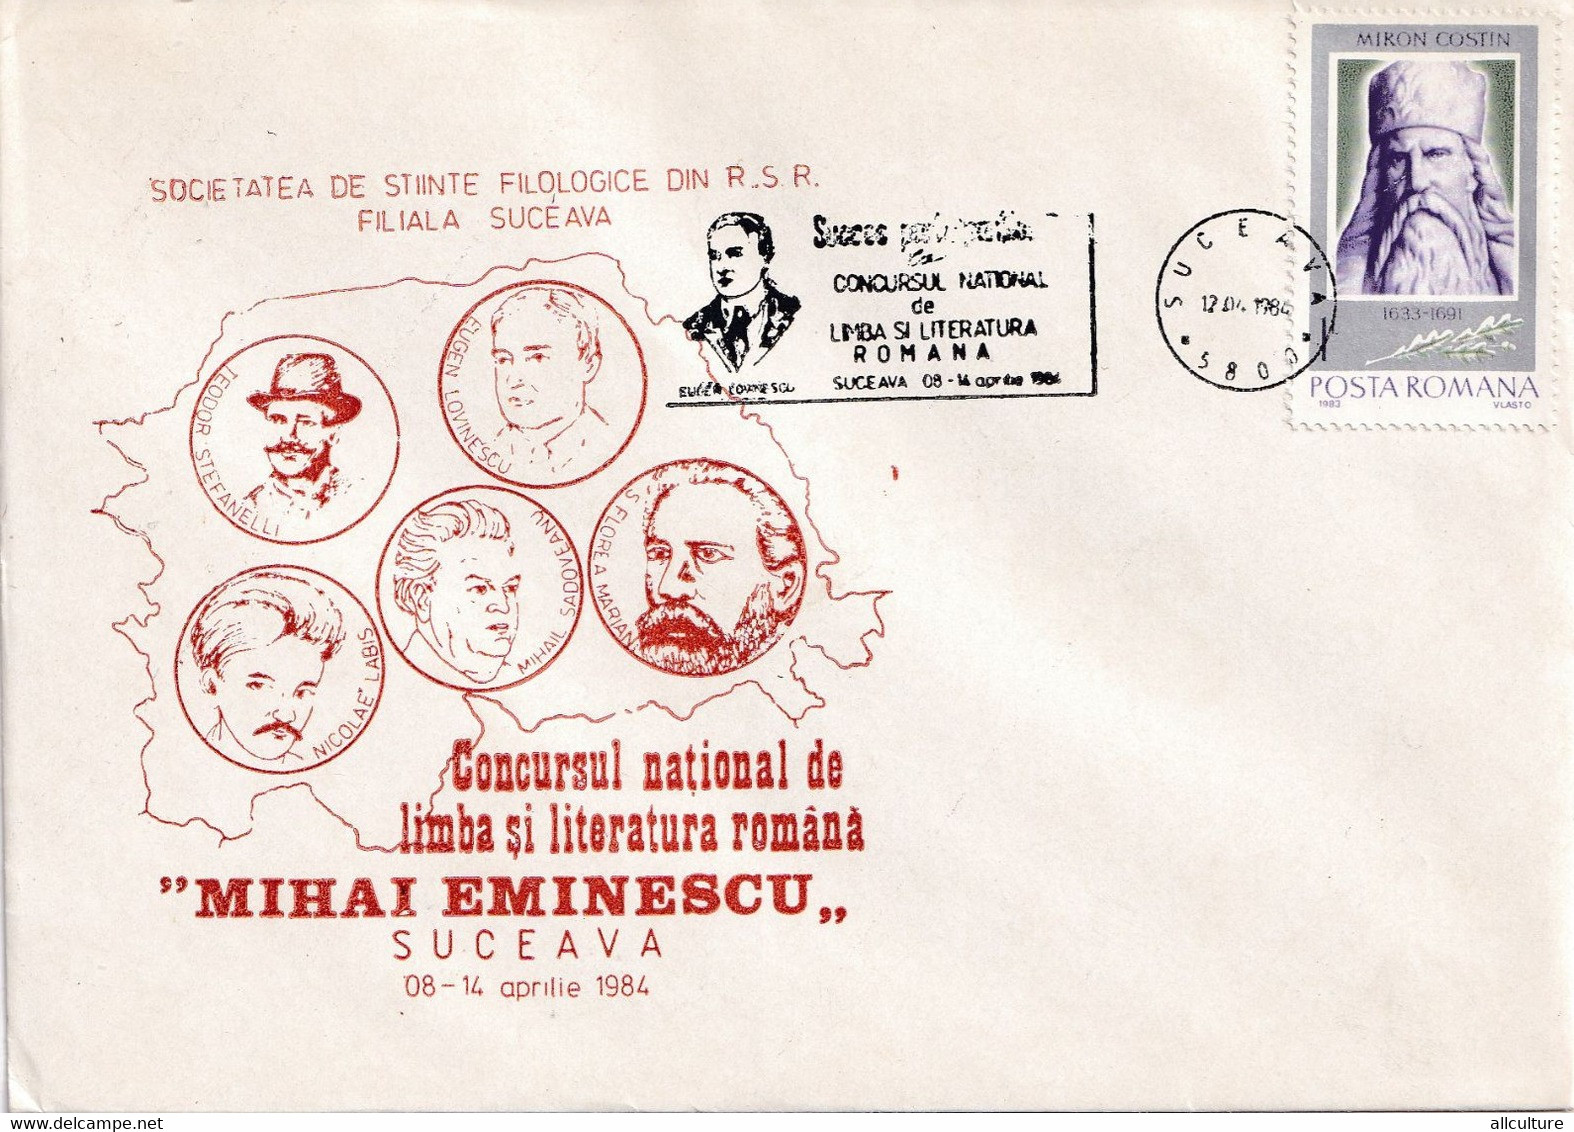 A2824 - Societatea De Stiinte Filologice, Concursul National De Literatura Romana Mihai Eminescu, Suceava 1984  Romania - Briefe U. Dokumente